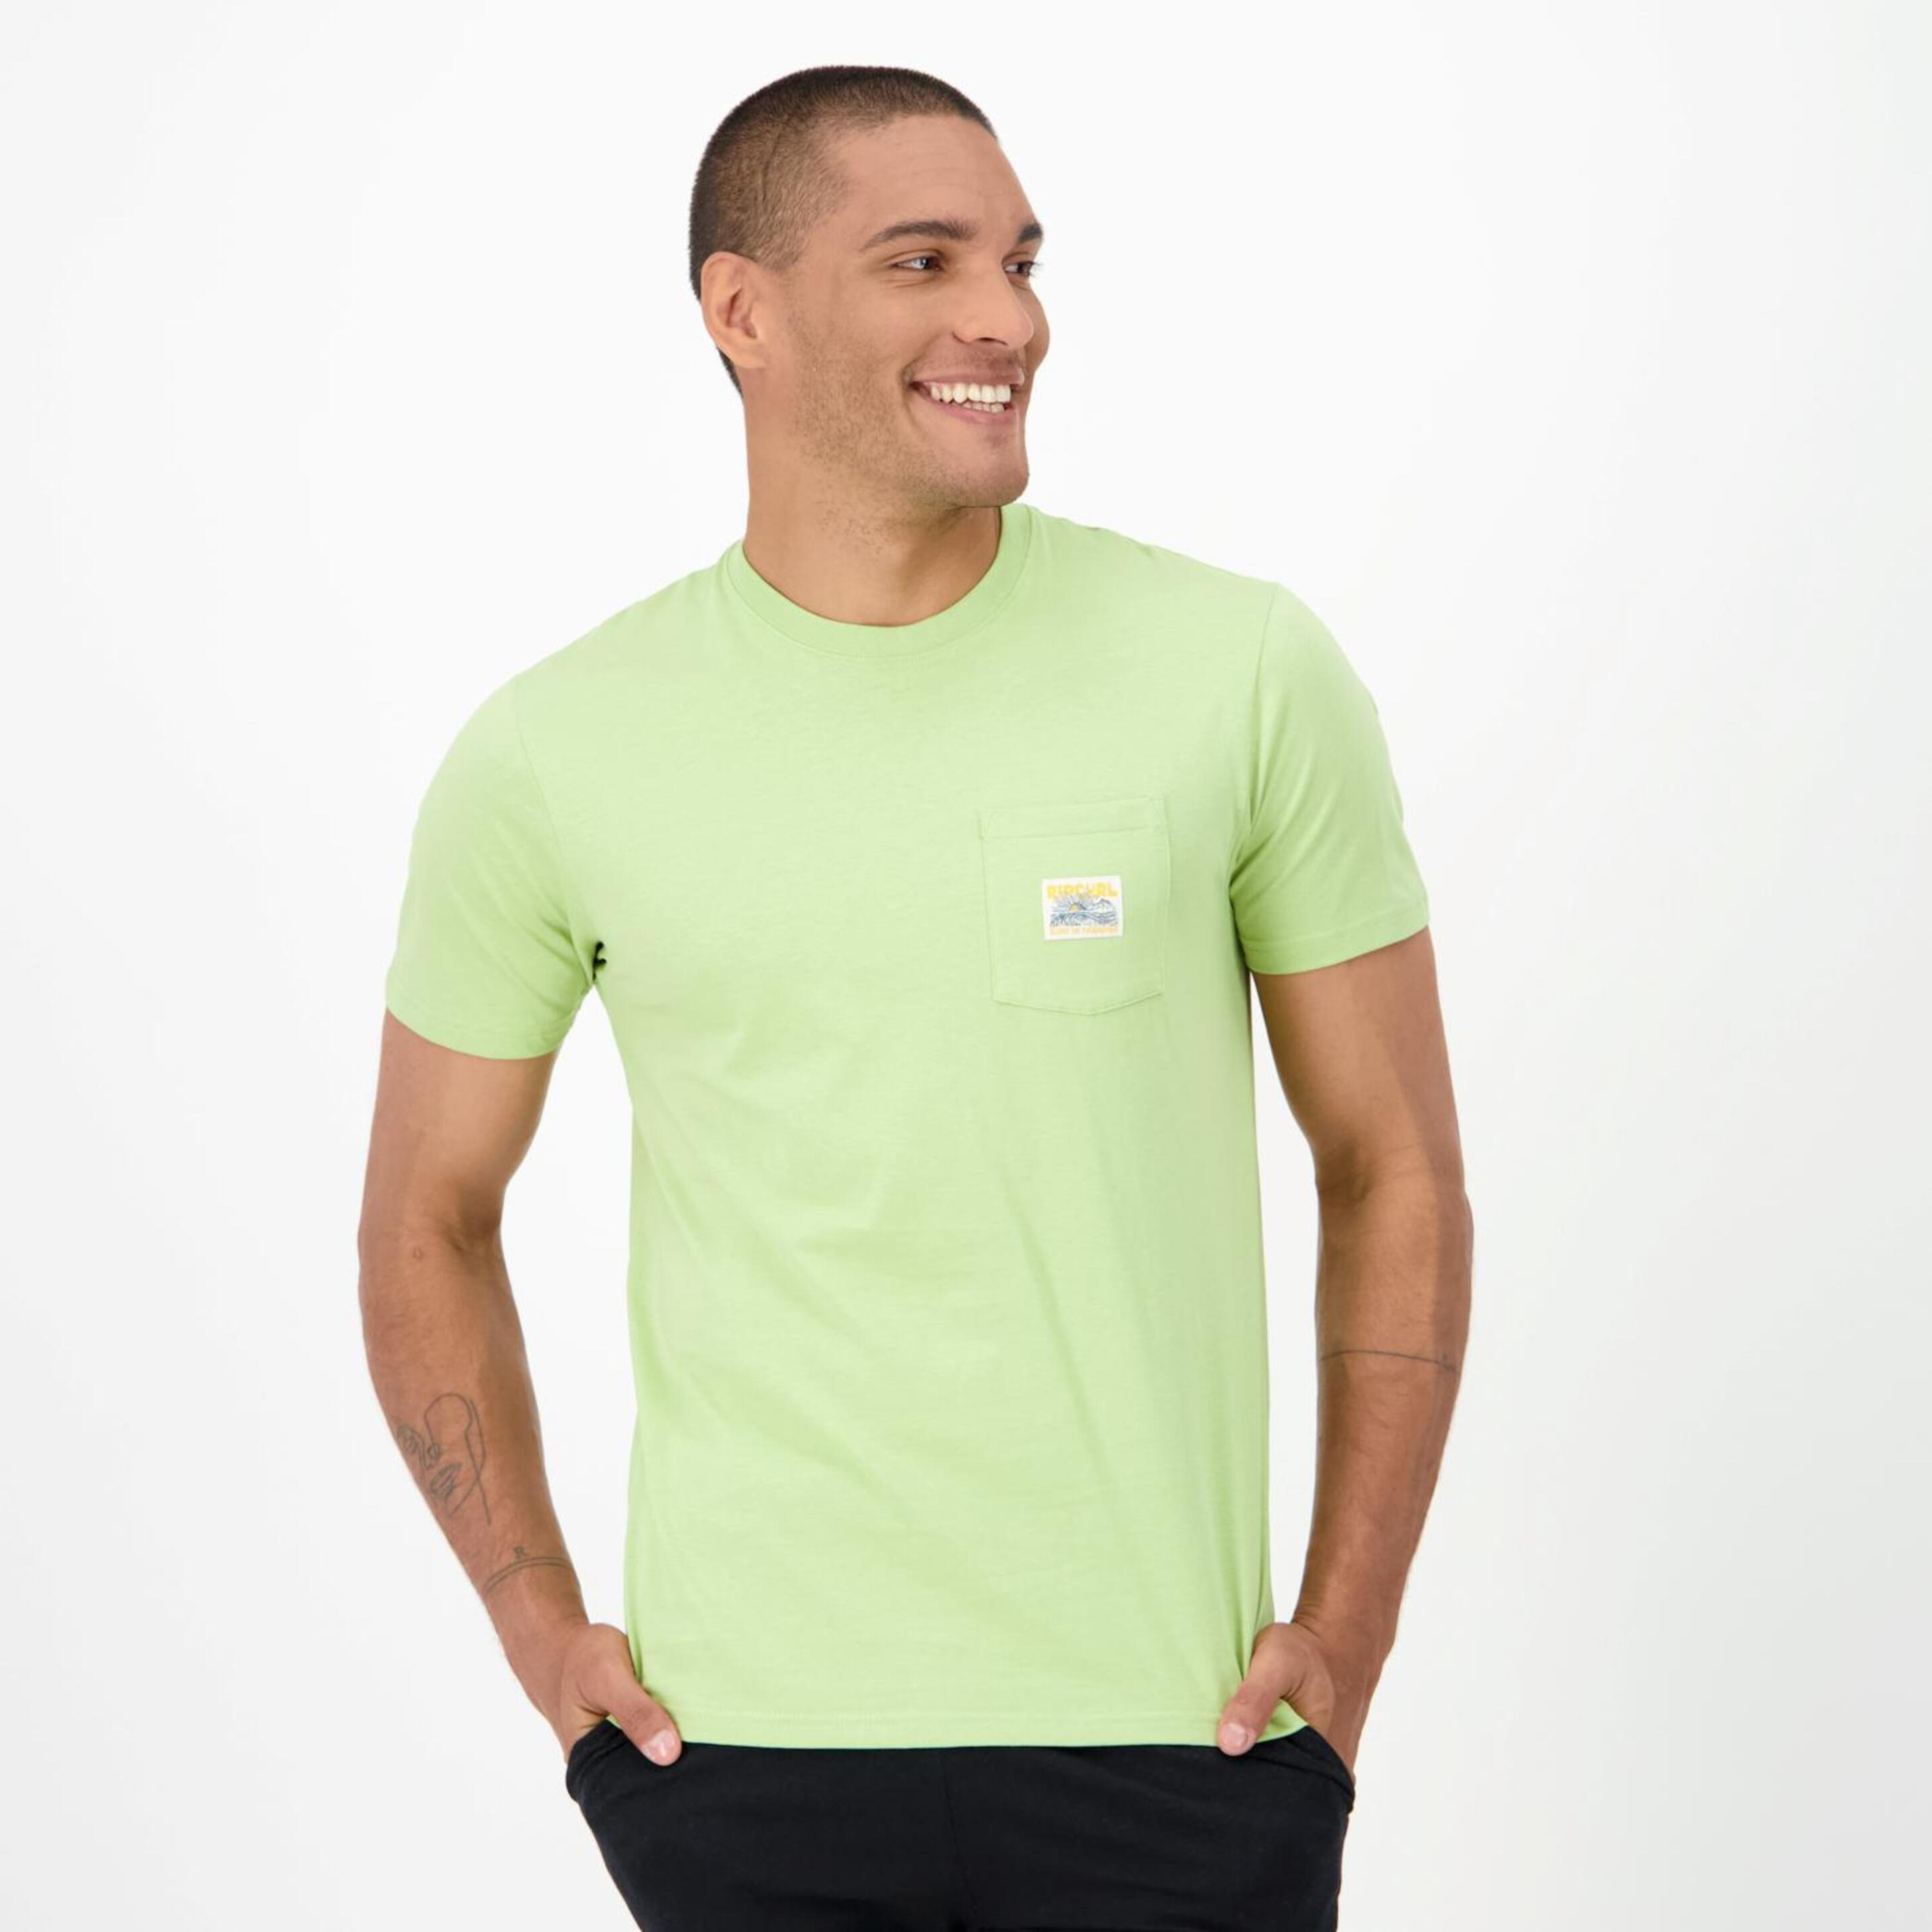 Camiseta Rip Curl - verde - Camiseta Hombre